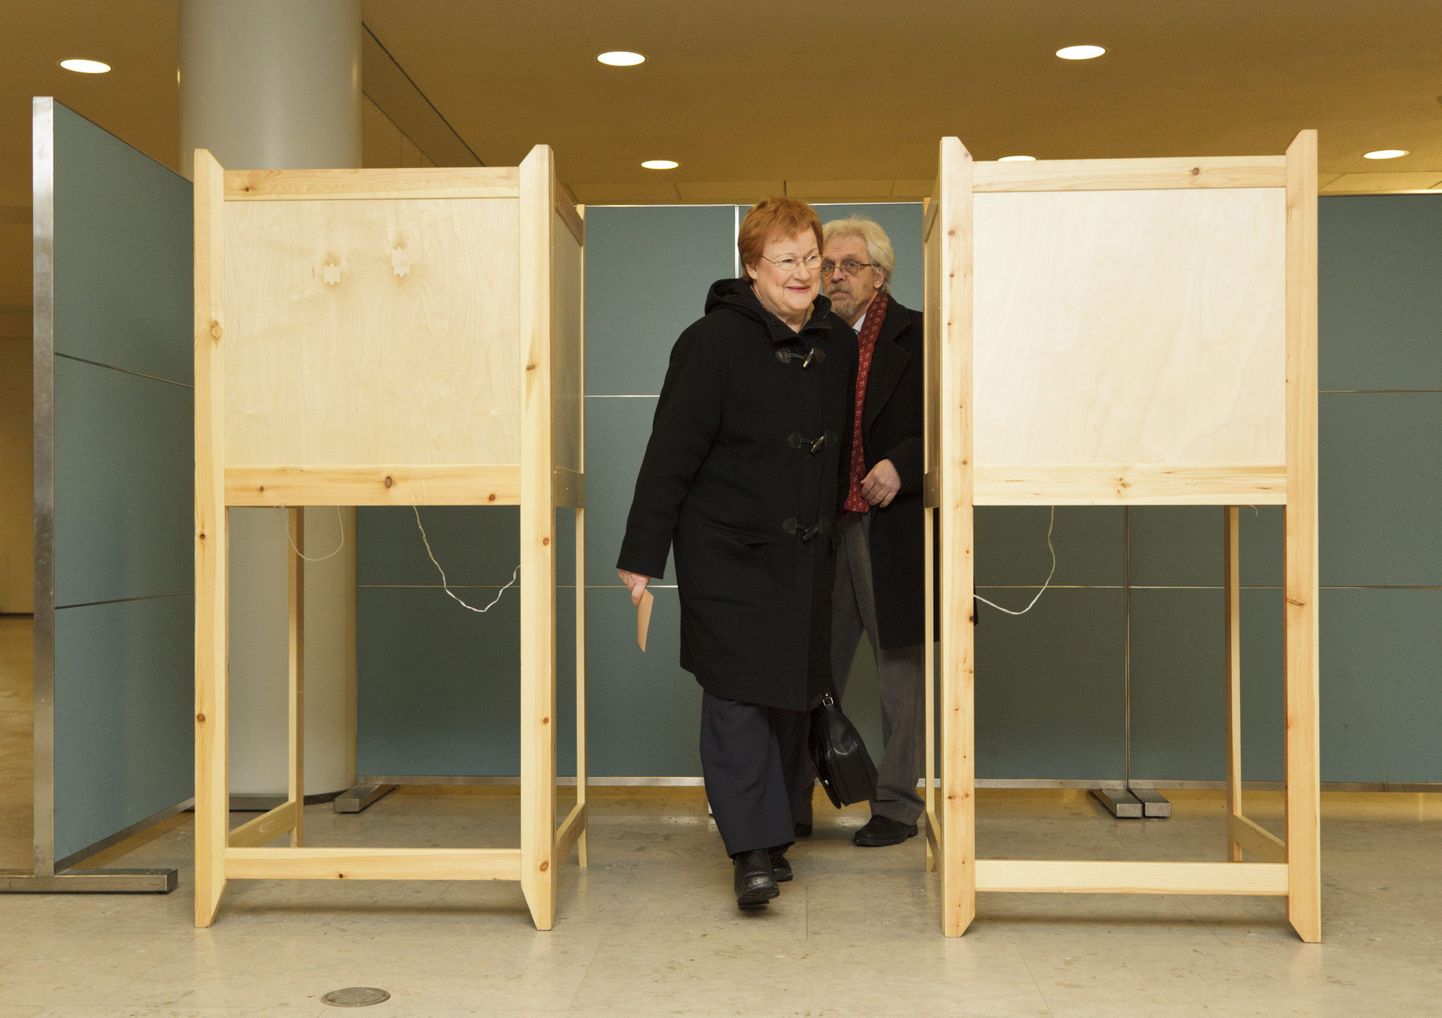 Kaks ametiaega järjest Soome riigipeaks olnud Tarja Halonen käis koos abikaasa Pentti Arajärviga eelhääletamas 31. jaanuaril.